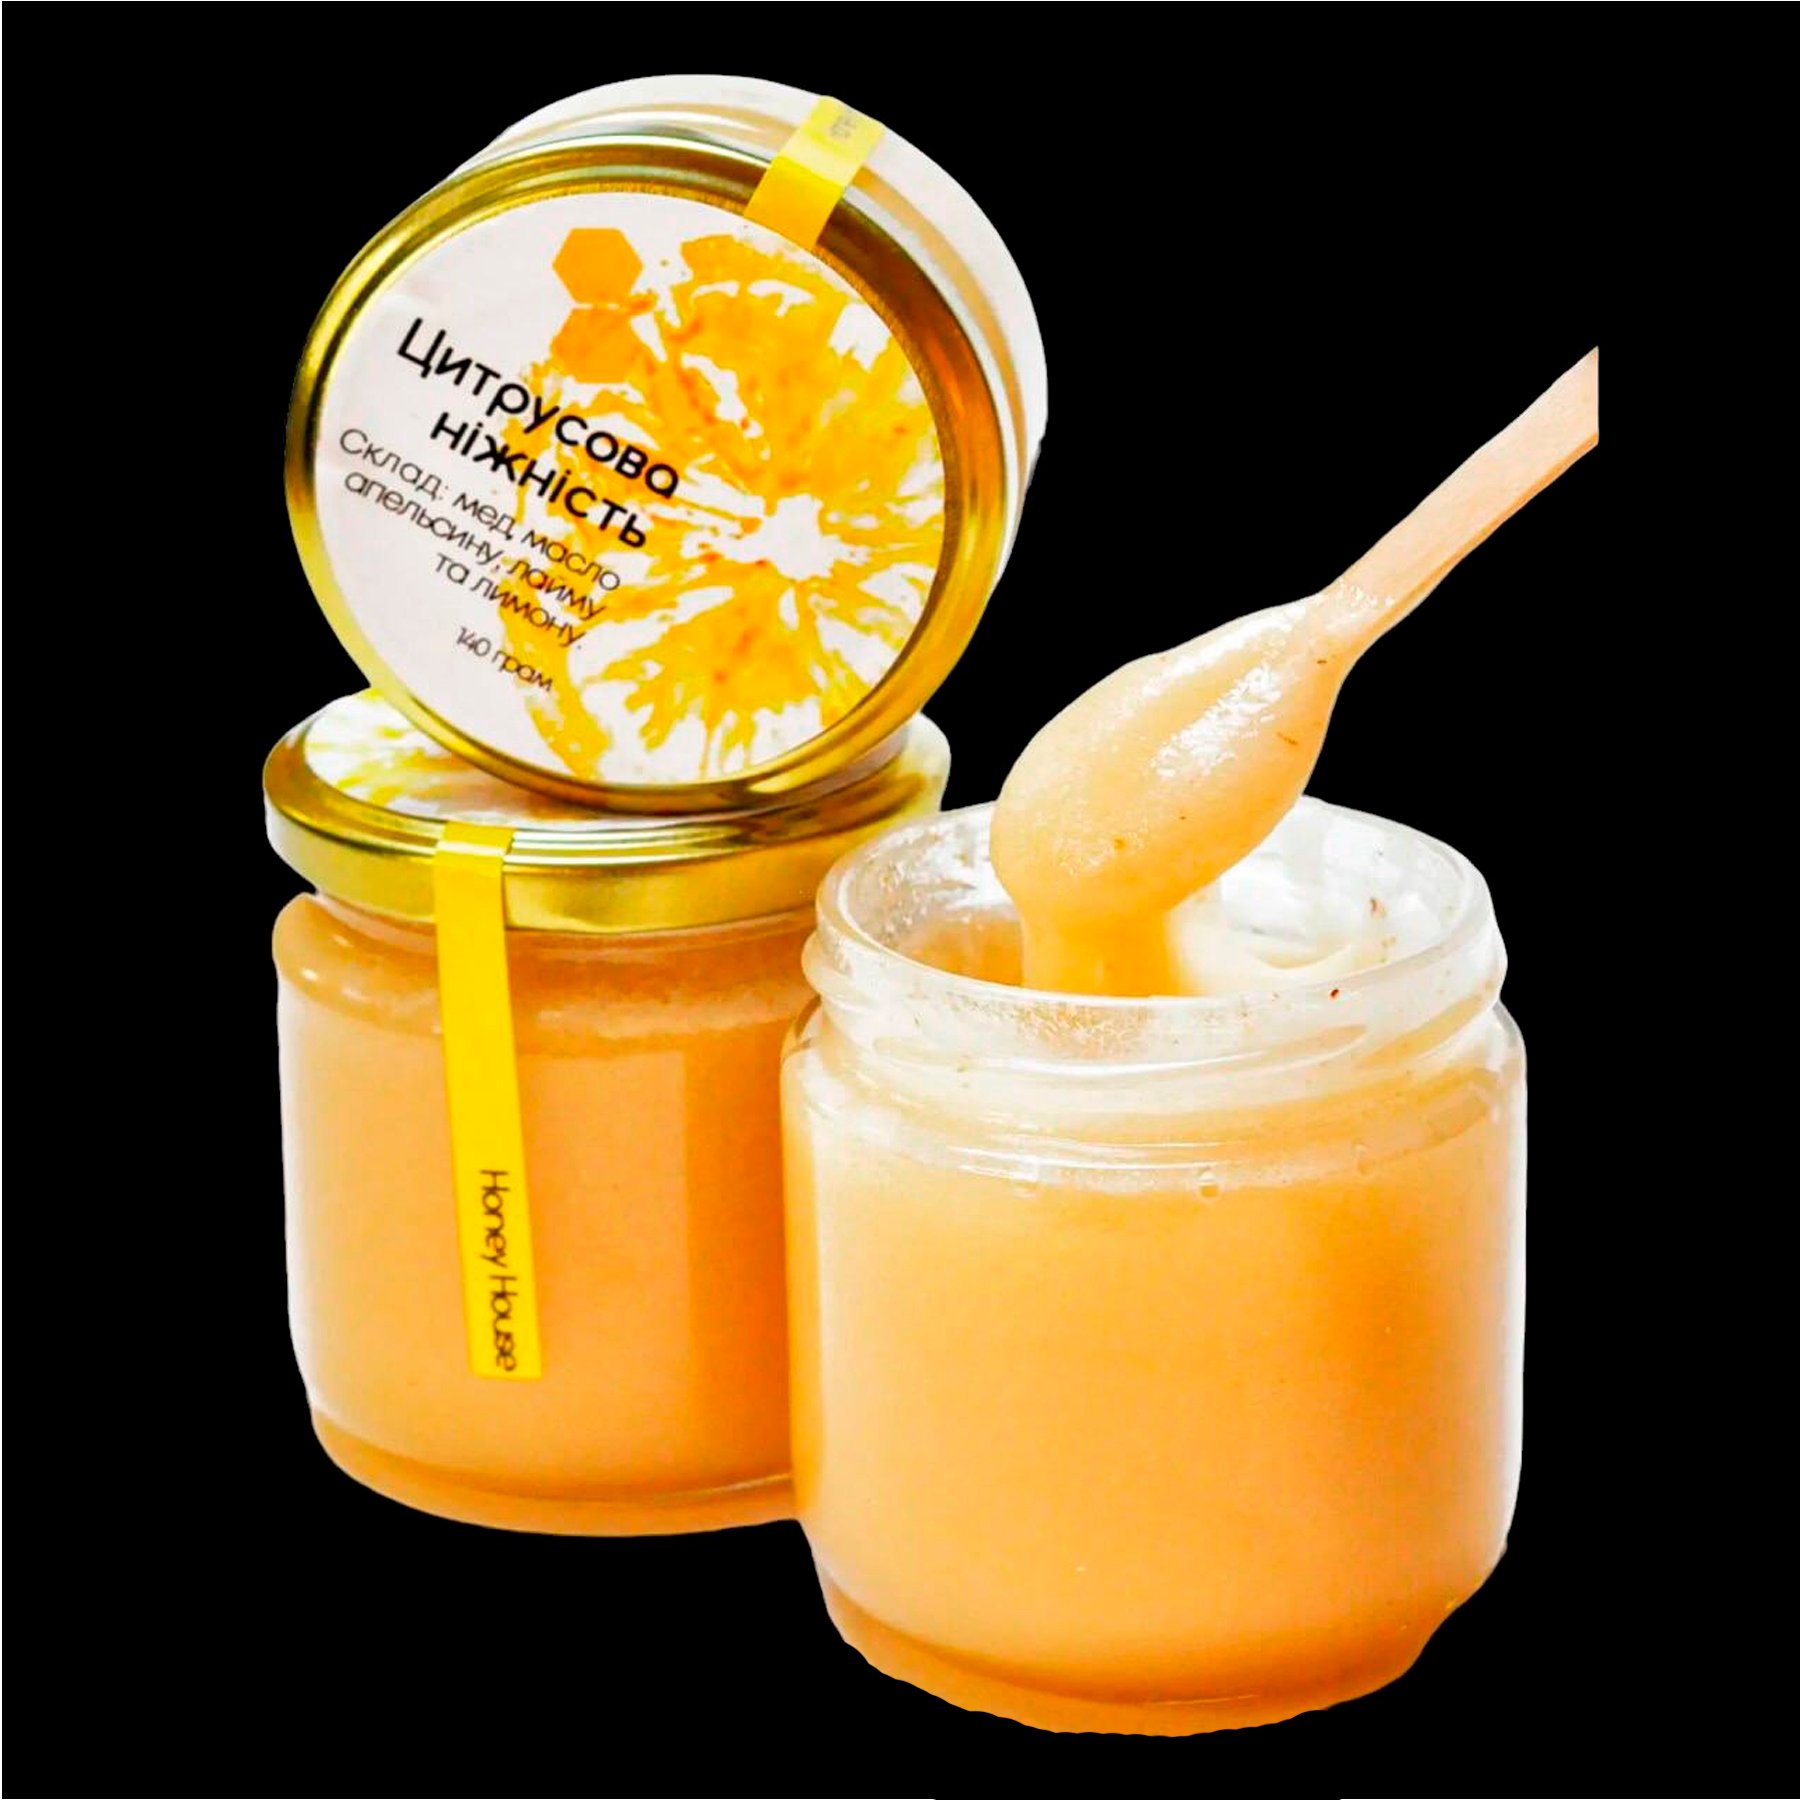 Медове варення “Цитрусова ніжність” із лимоном, апельсином та лаймом  260 г.